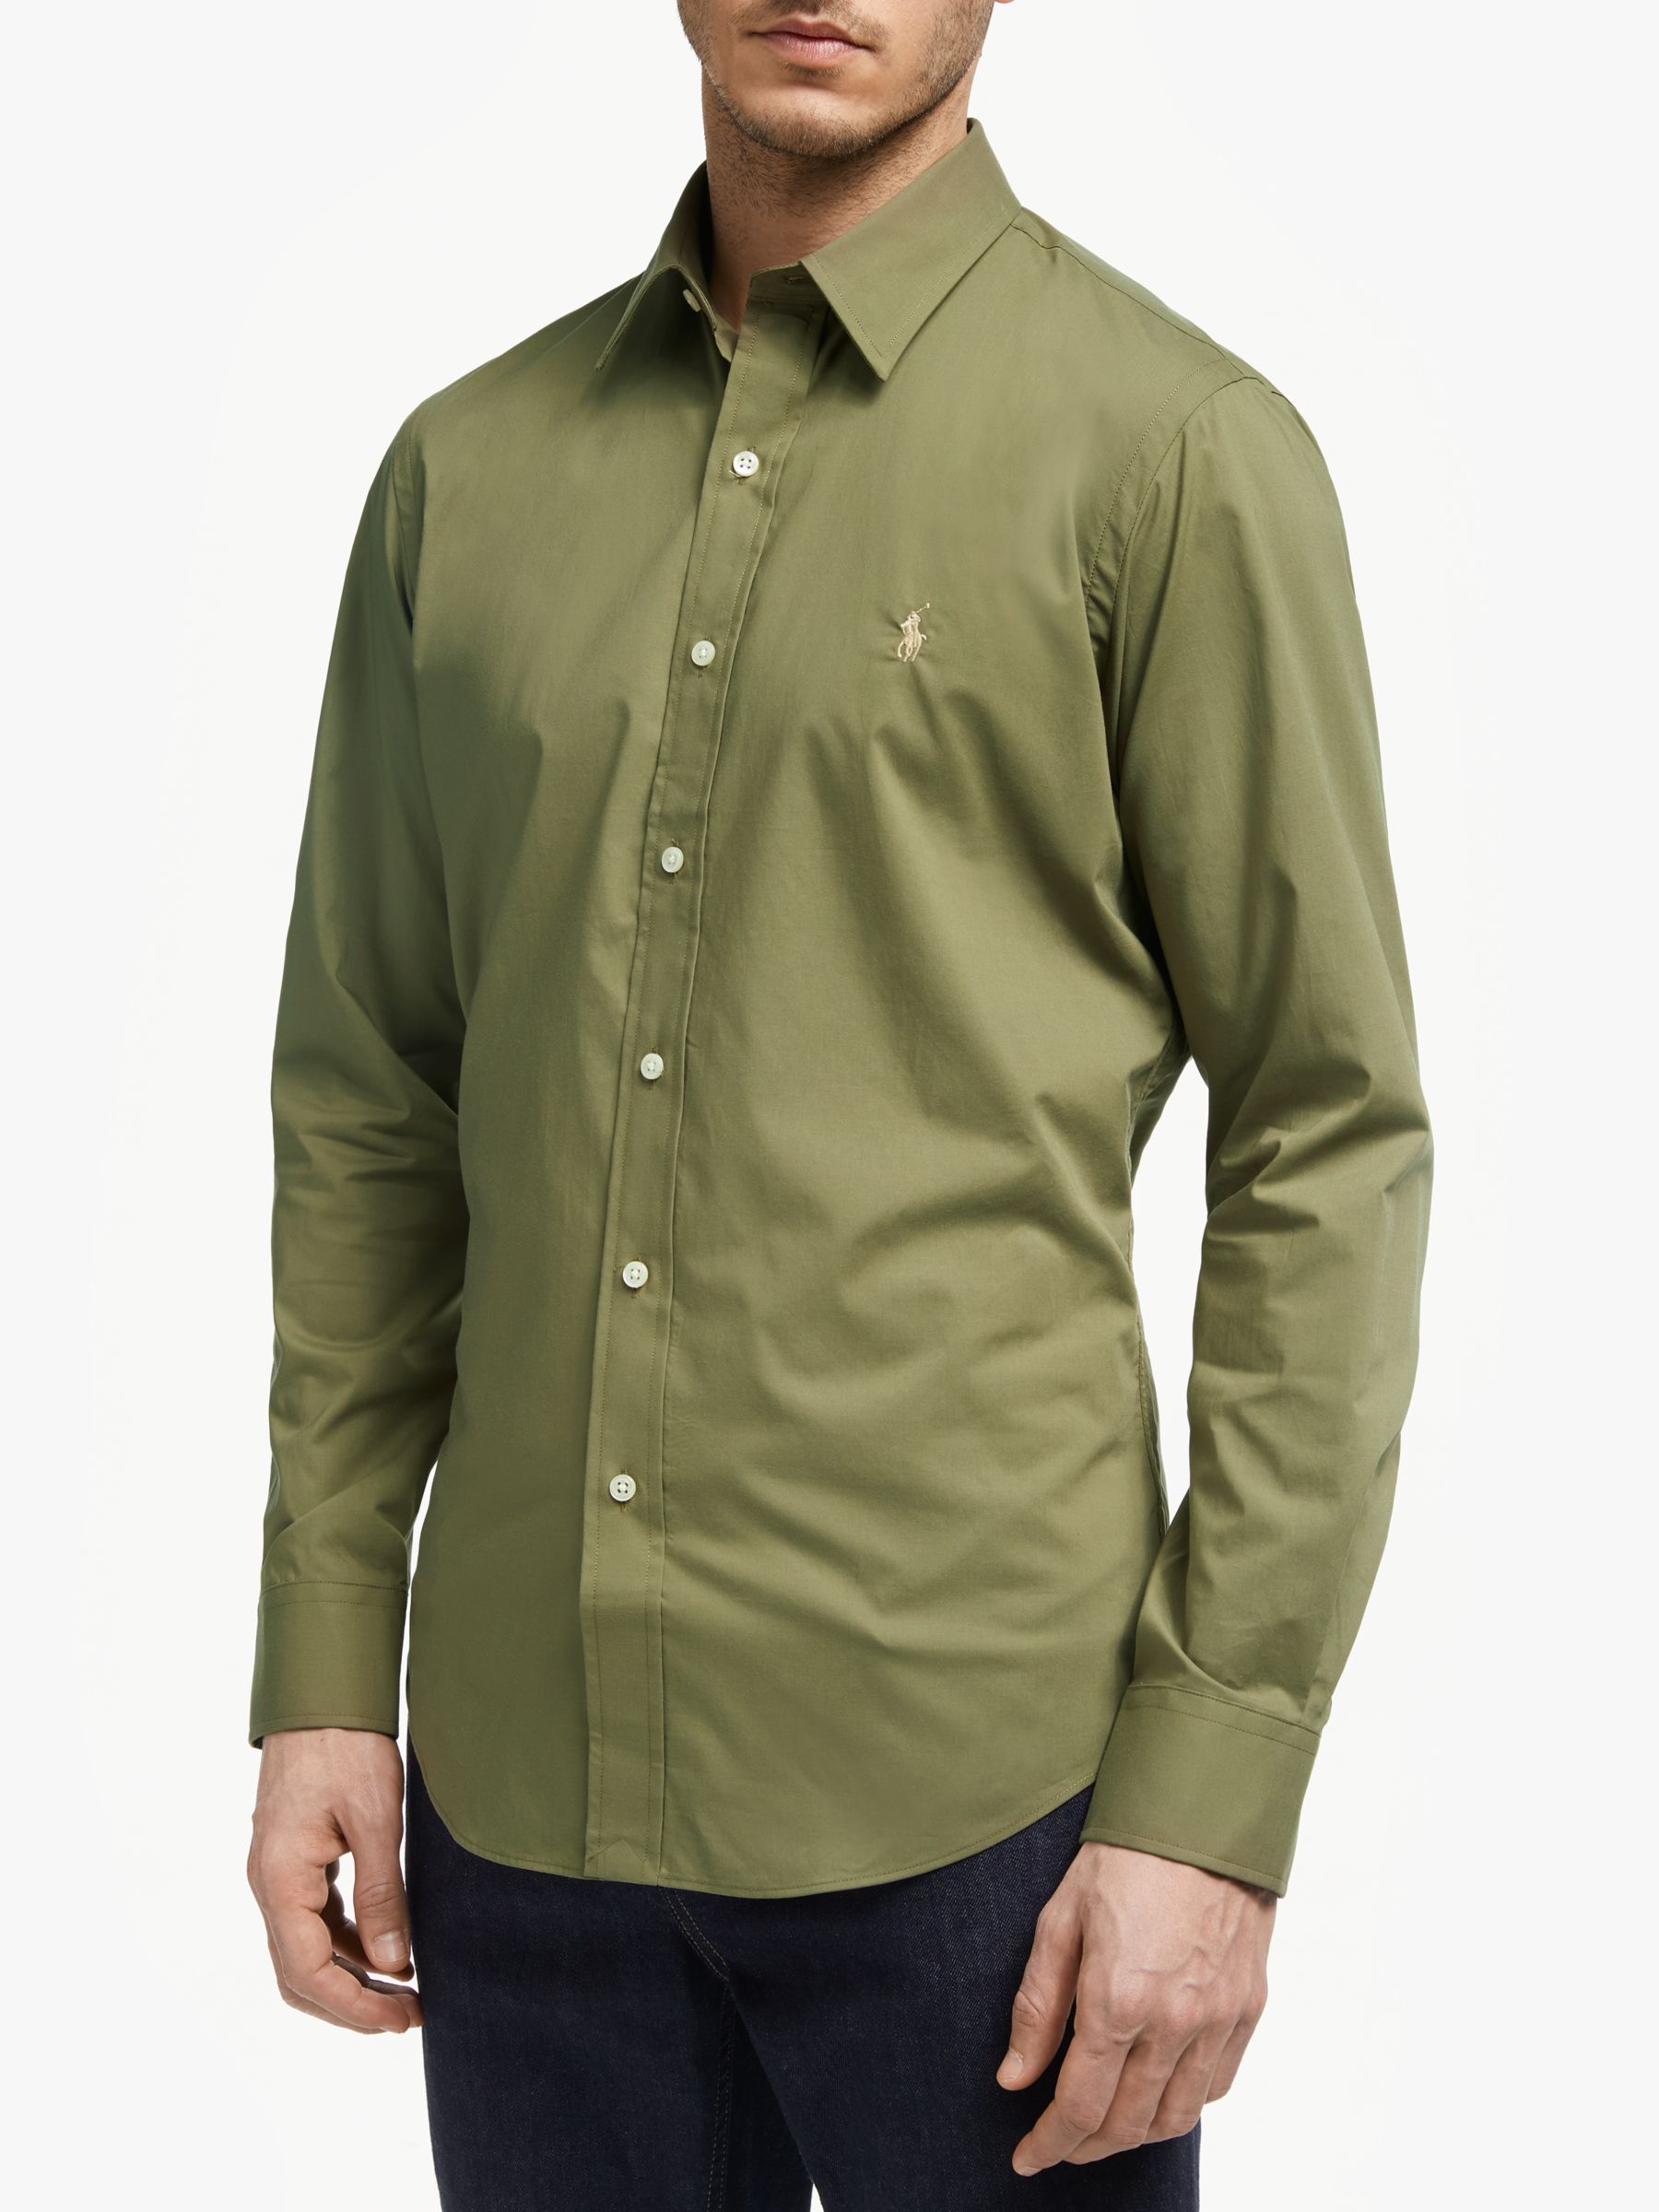 army green ralph lauren polo shirt